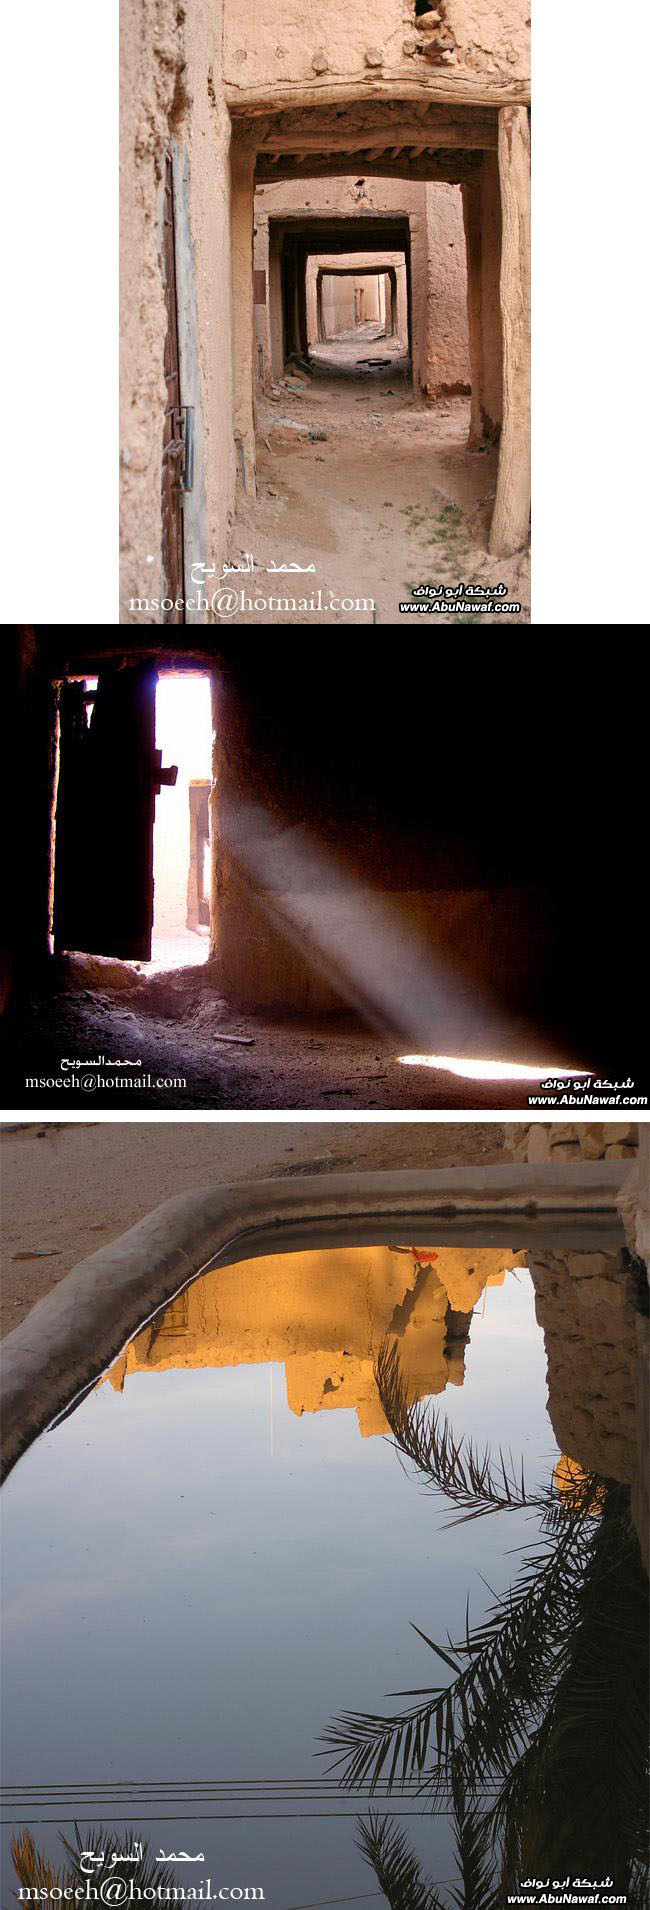 صور : زيارة الى البيوت القديمة .. من خربات سدير